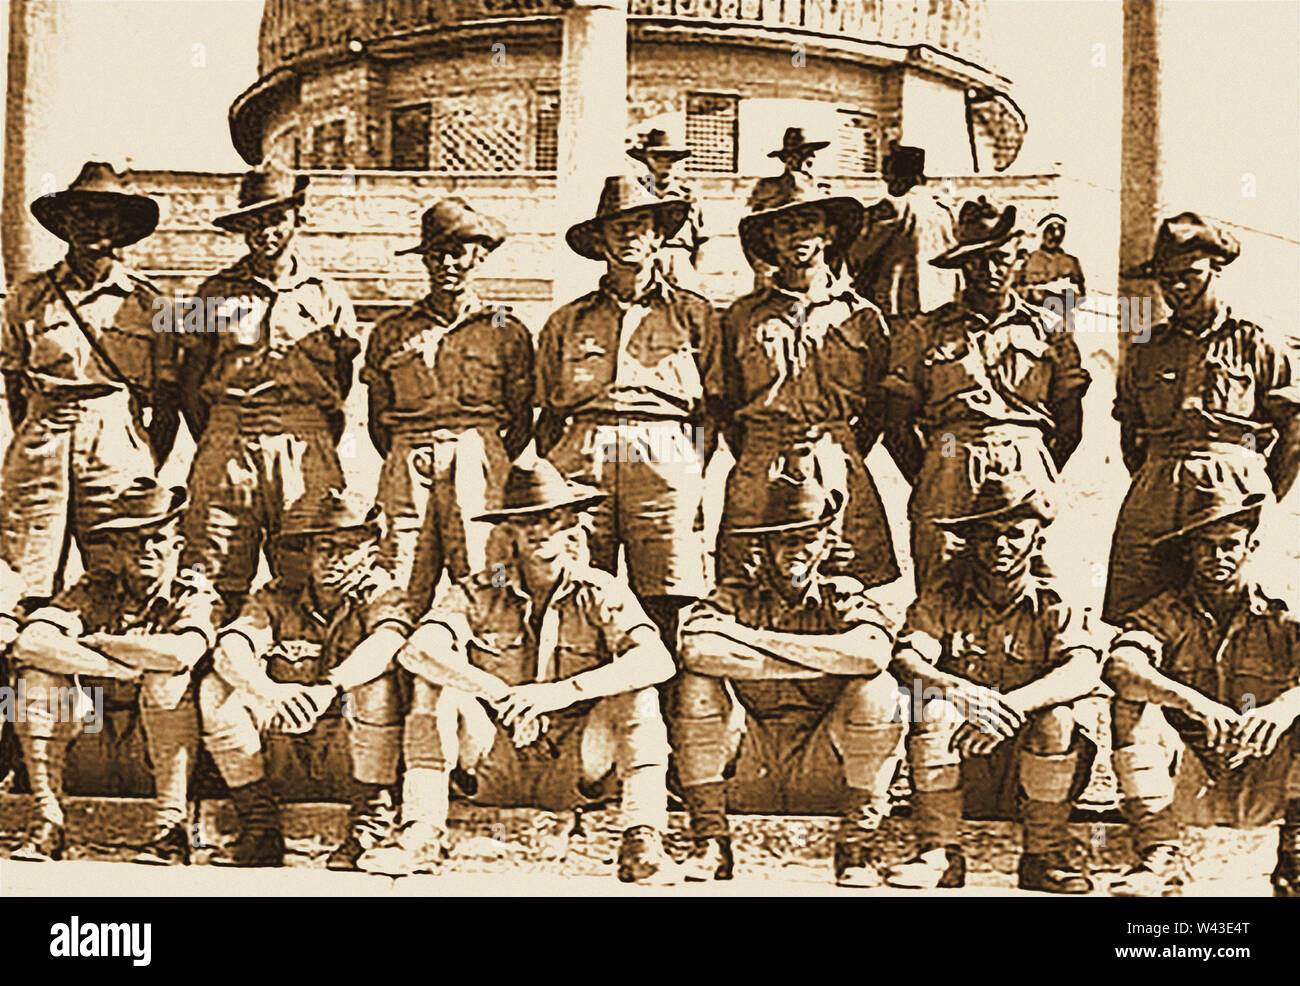 WWII - einer gedruckten Foto von, was scheint, australische Truppen in den Nahen Osten und Fernen Osten (evtl. 9. division Ägypten). Stockfoto